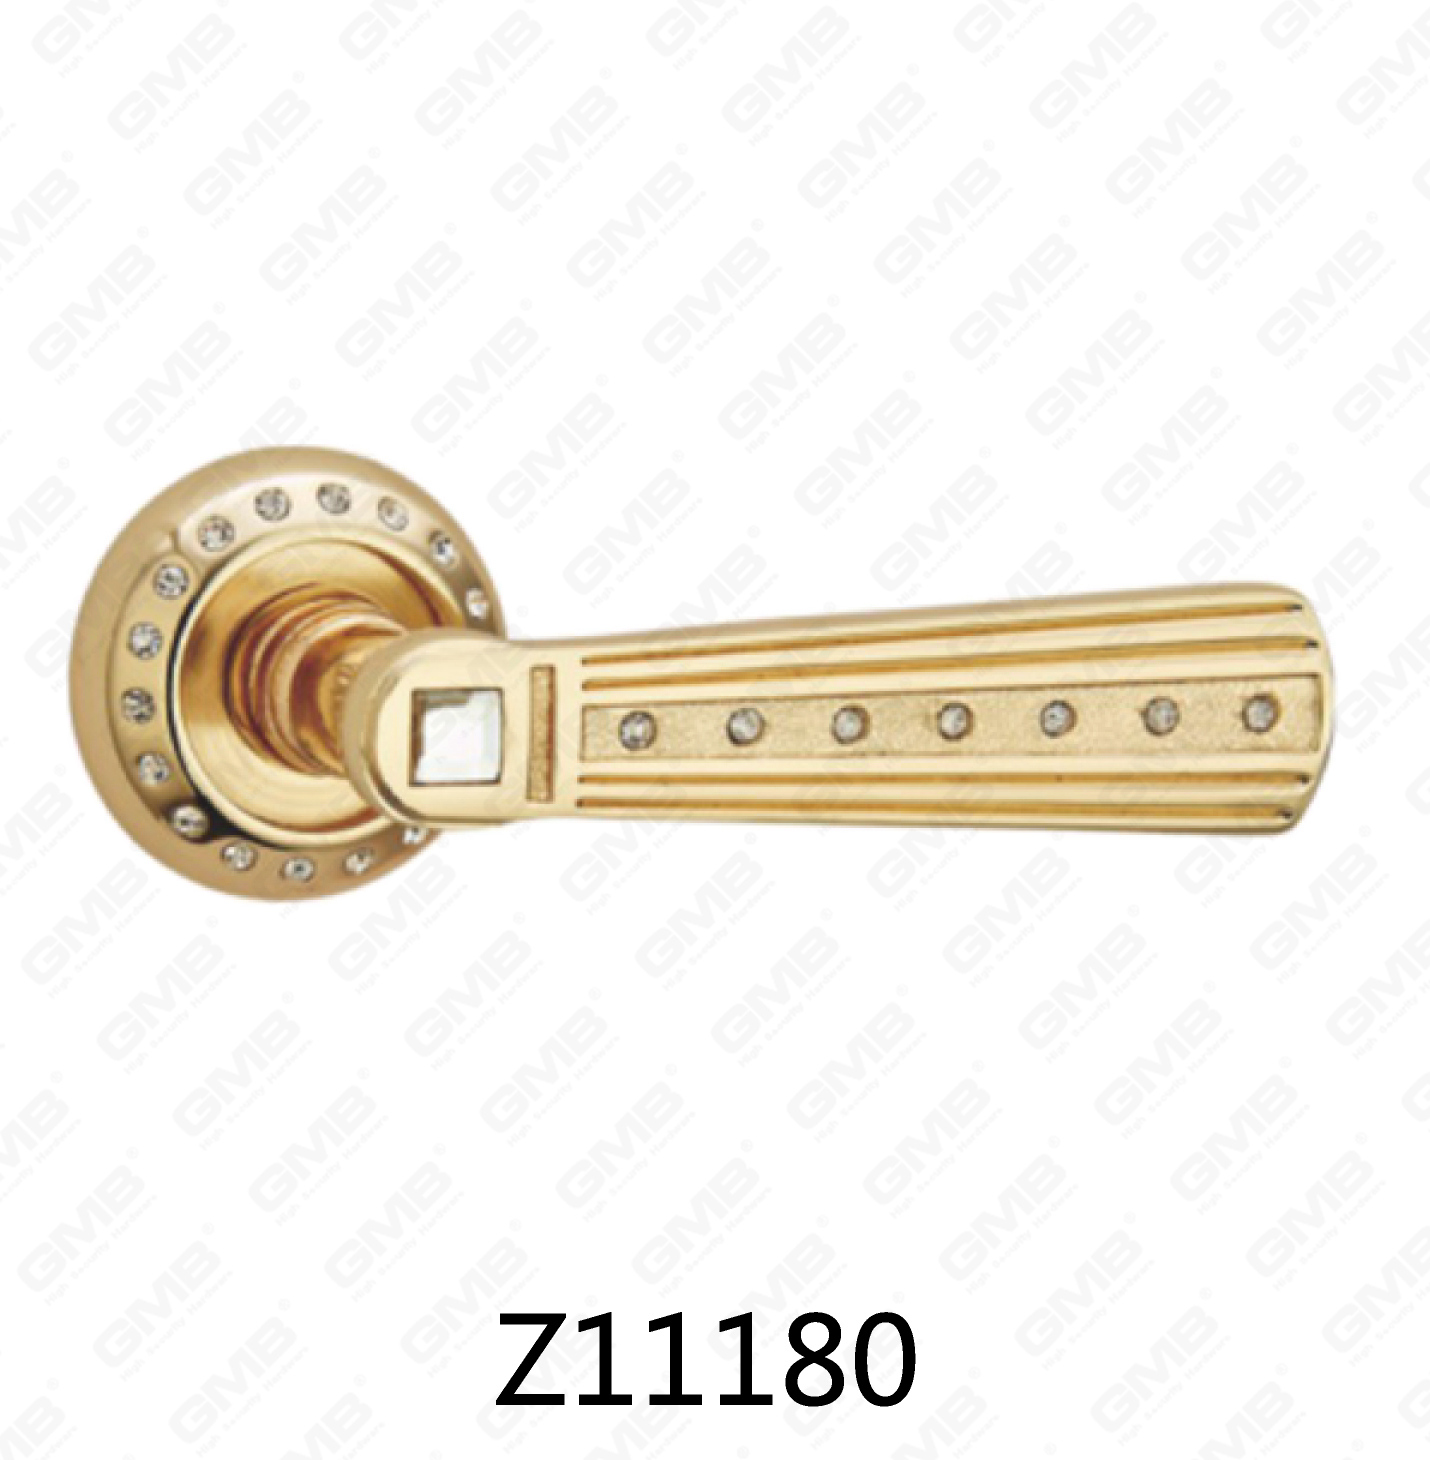 ידית דלת רוזטת אלומיניום מסגסוגת אבץ של Zamak עם רוזטה עגולה (Z11180)